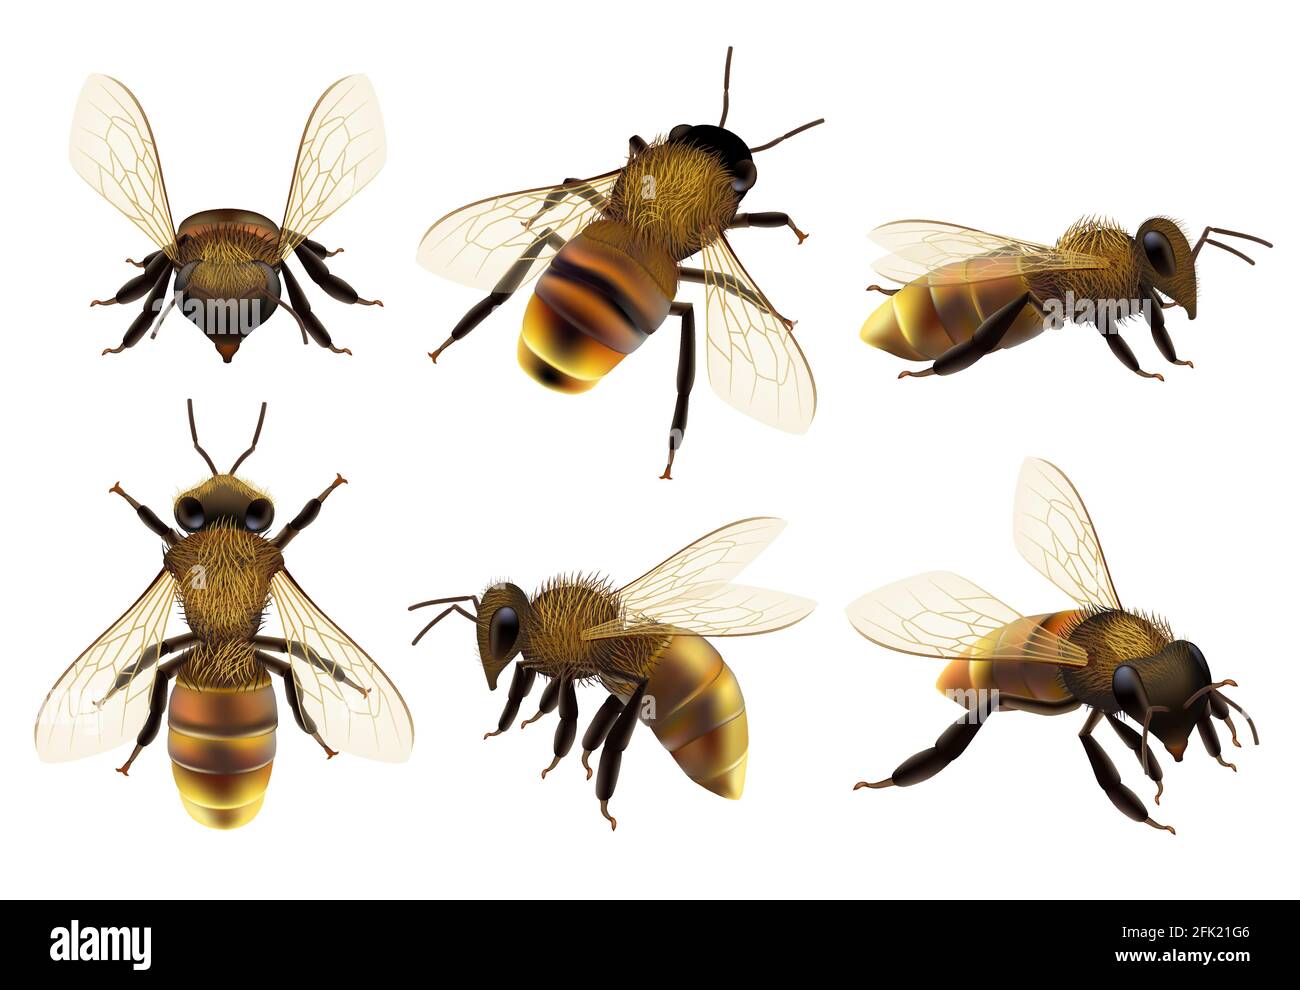 Honigbiene realistisch. Verschiedene Wildtiere Gefahr Insekten fliegende Wespen natürliche botanische Fauna Vektor Nahaufnahme Bilder von Biene Stock Vektor